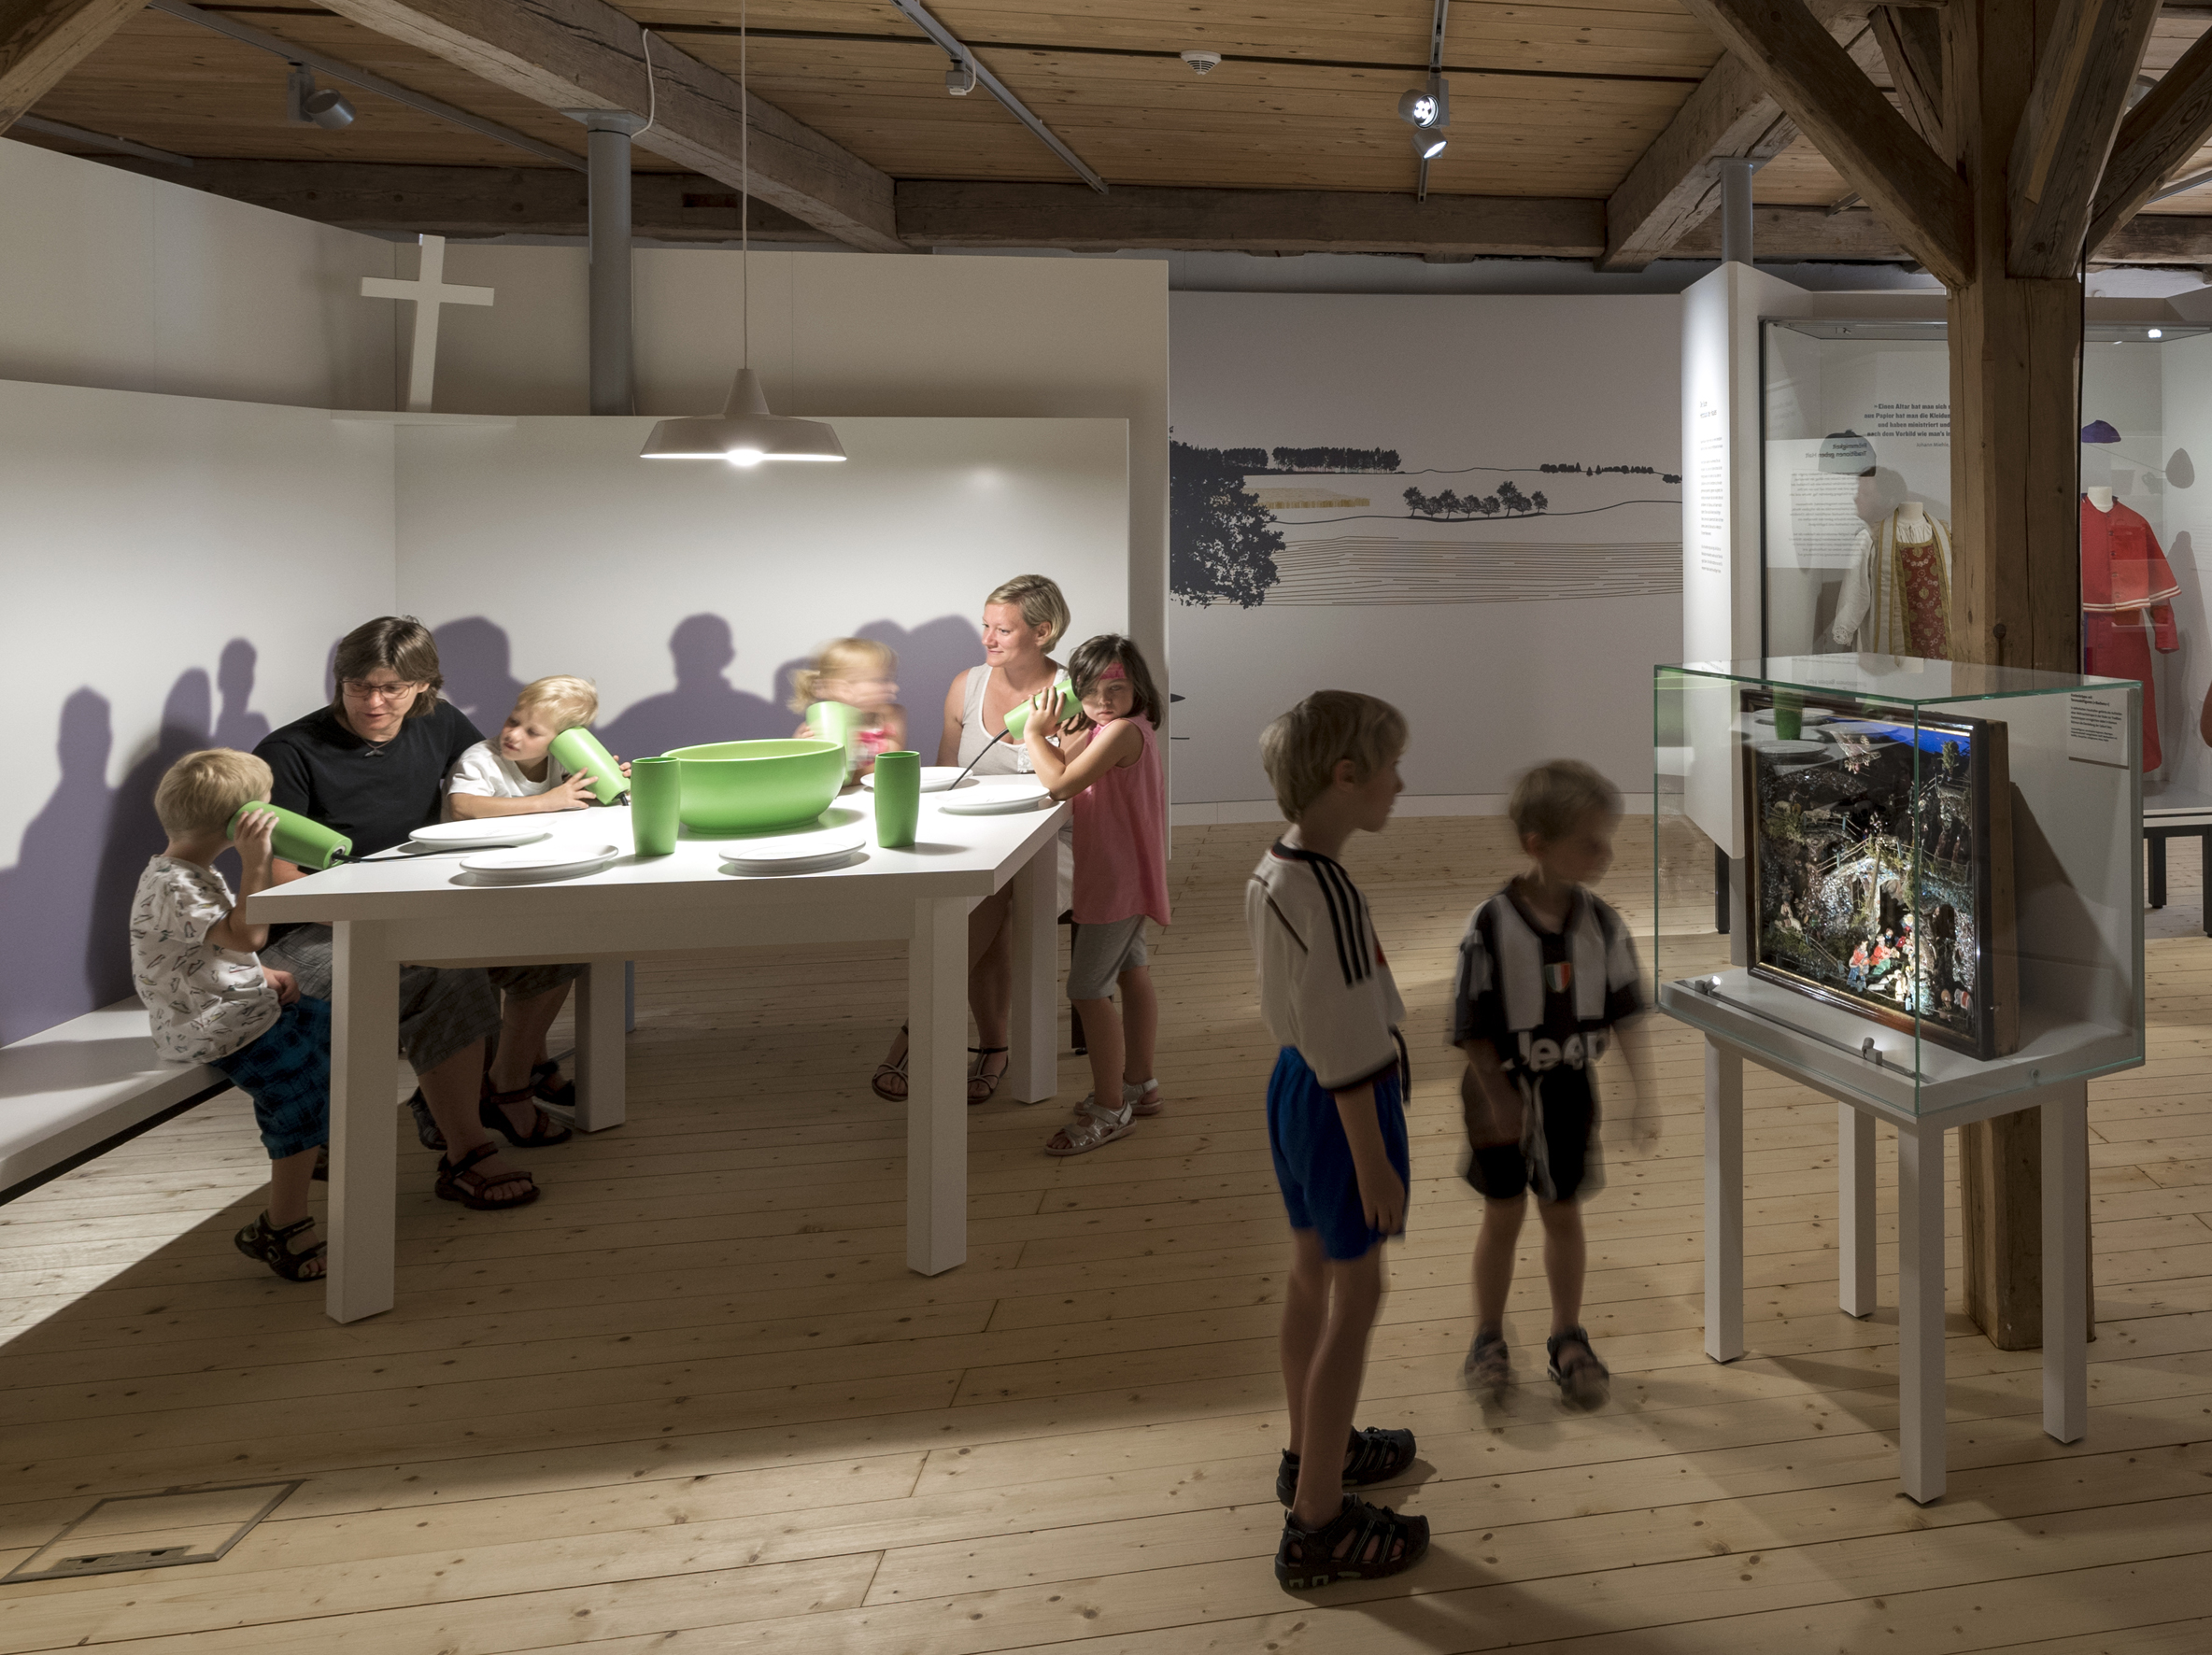 Objekt im Fokus – erzähl mal! Führung mit Erzählcafé im Museum Oberschönenfeld